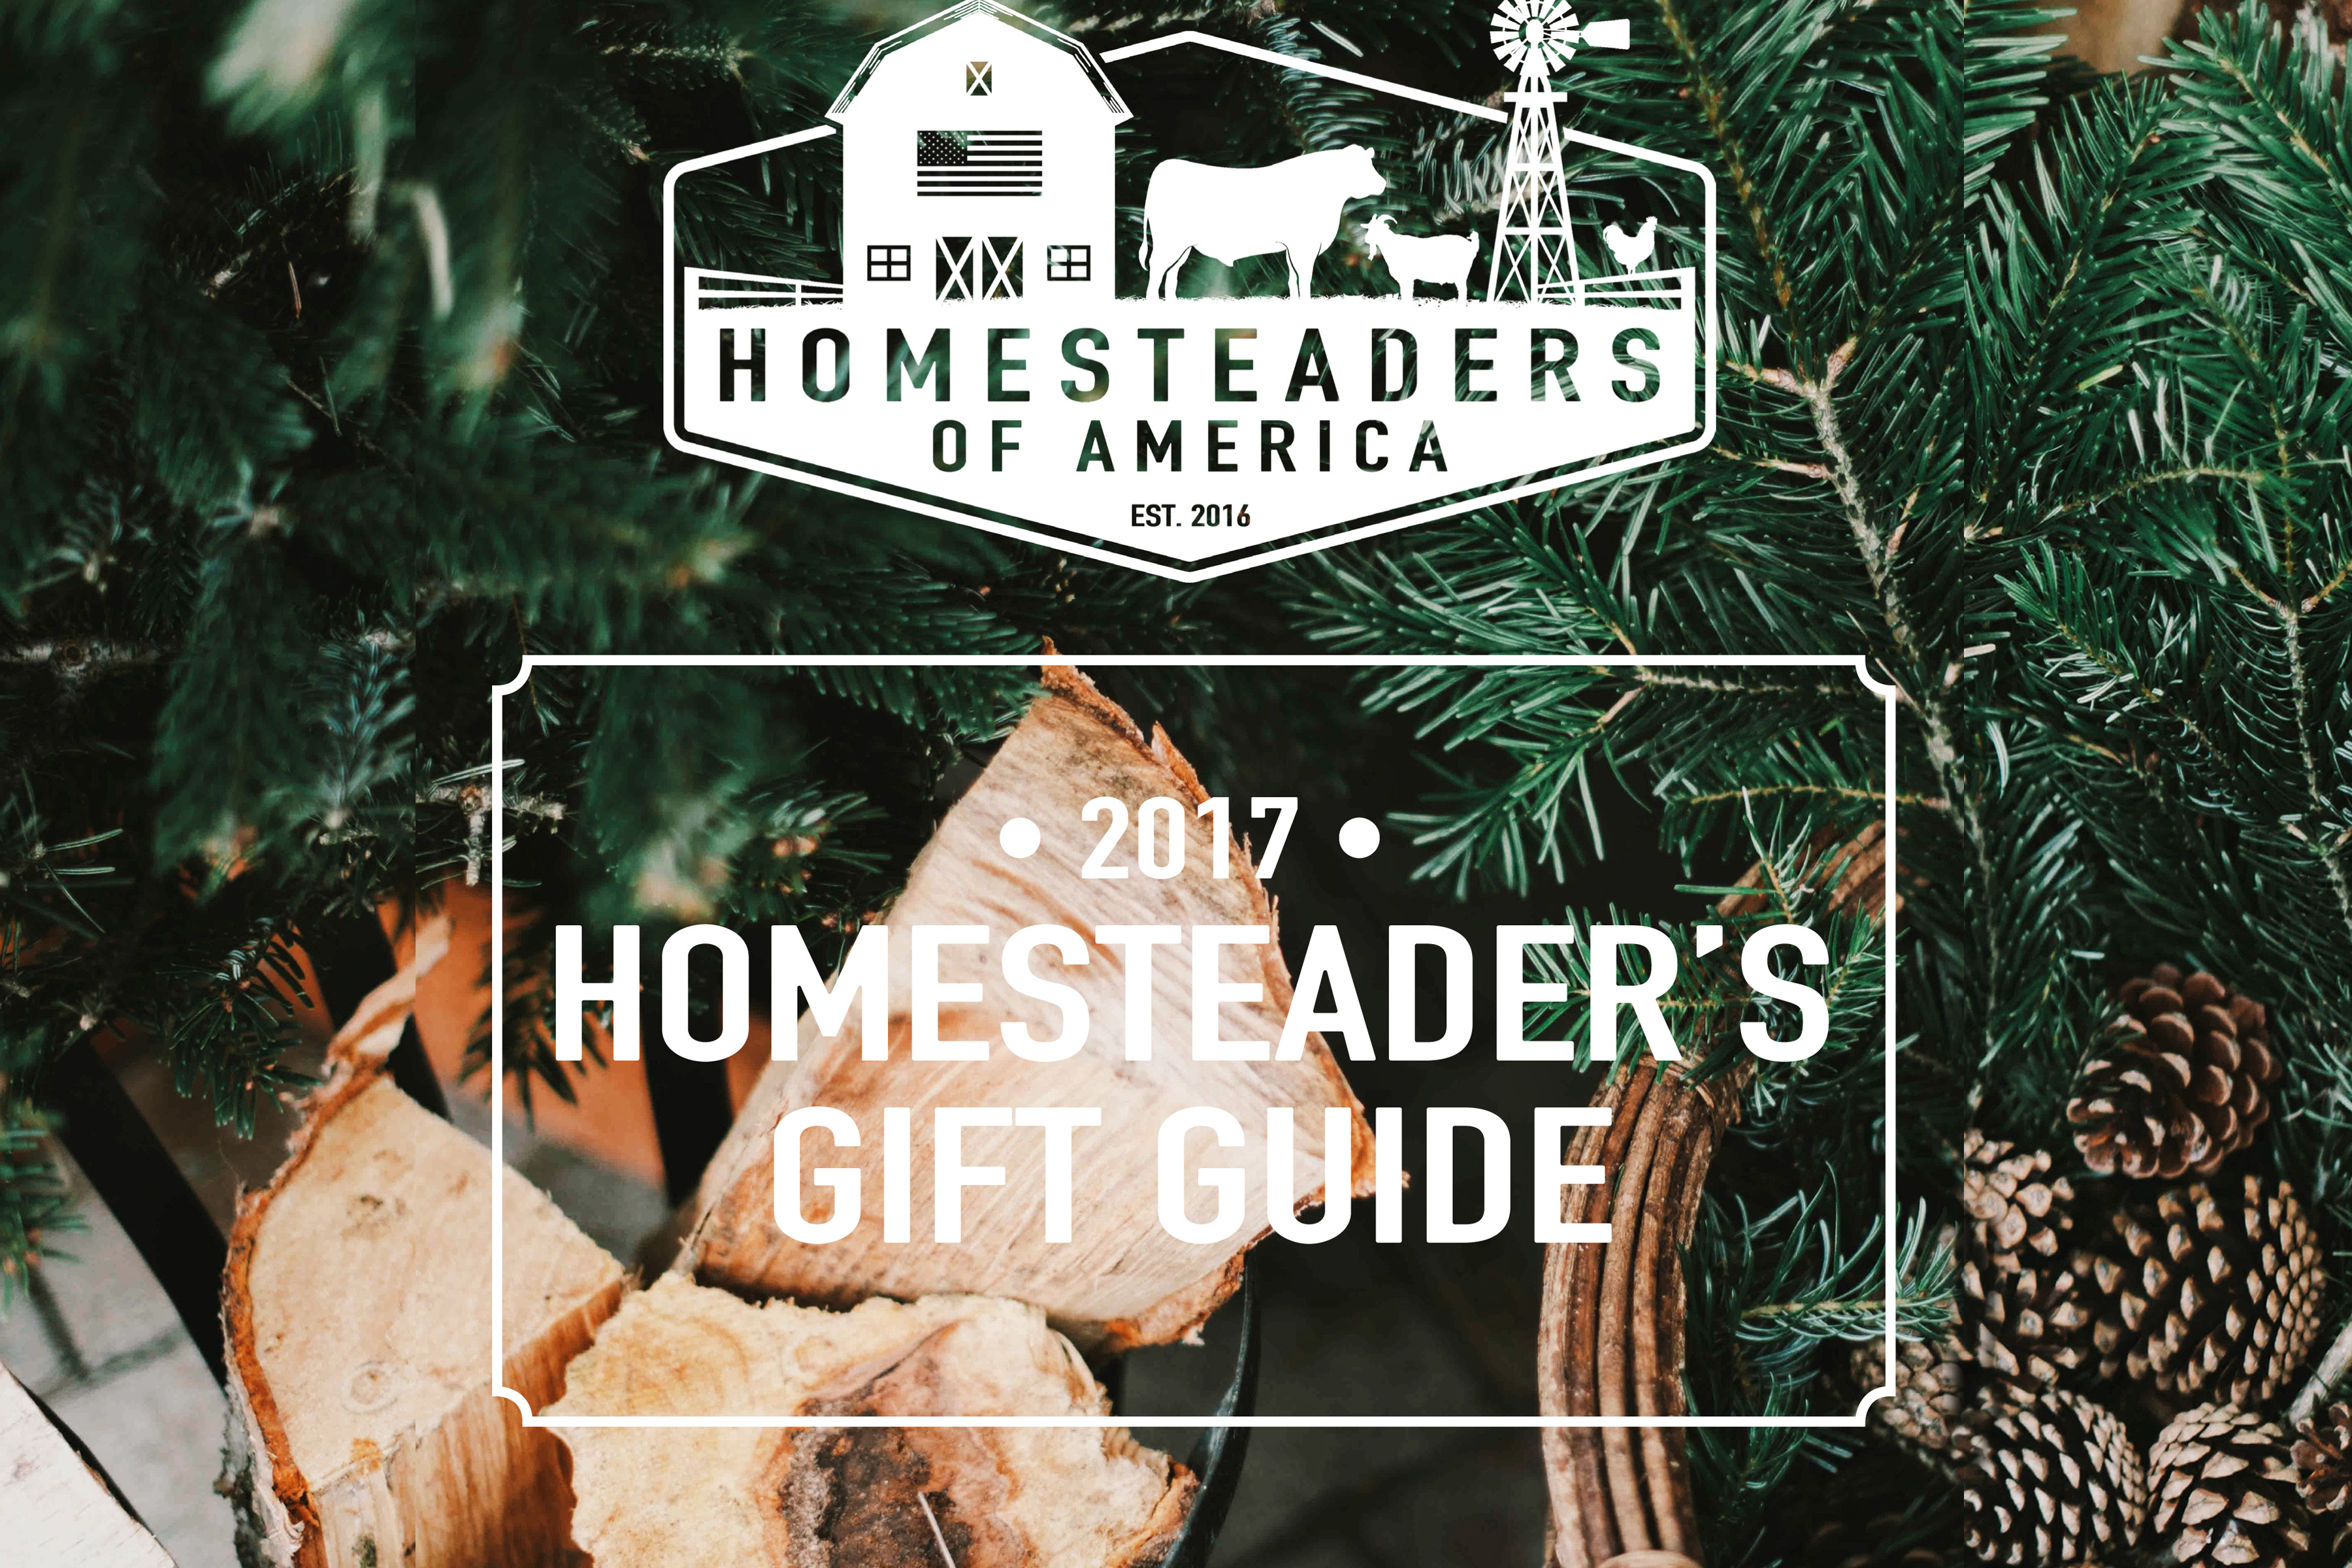 The Homesteaders of America "Homesteader" Gift Guide